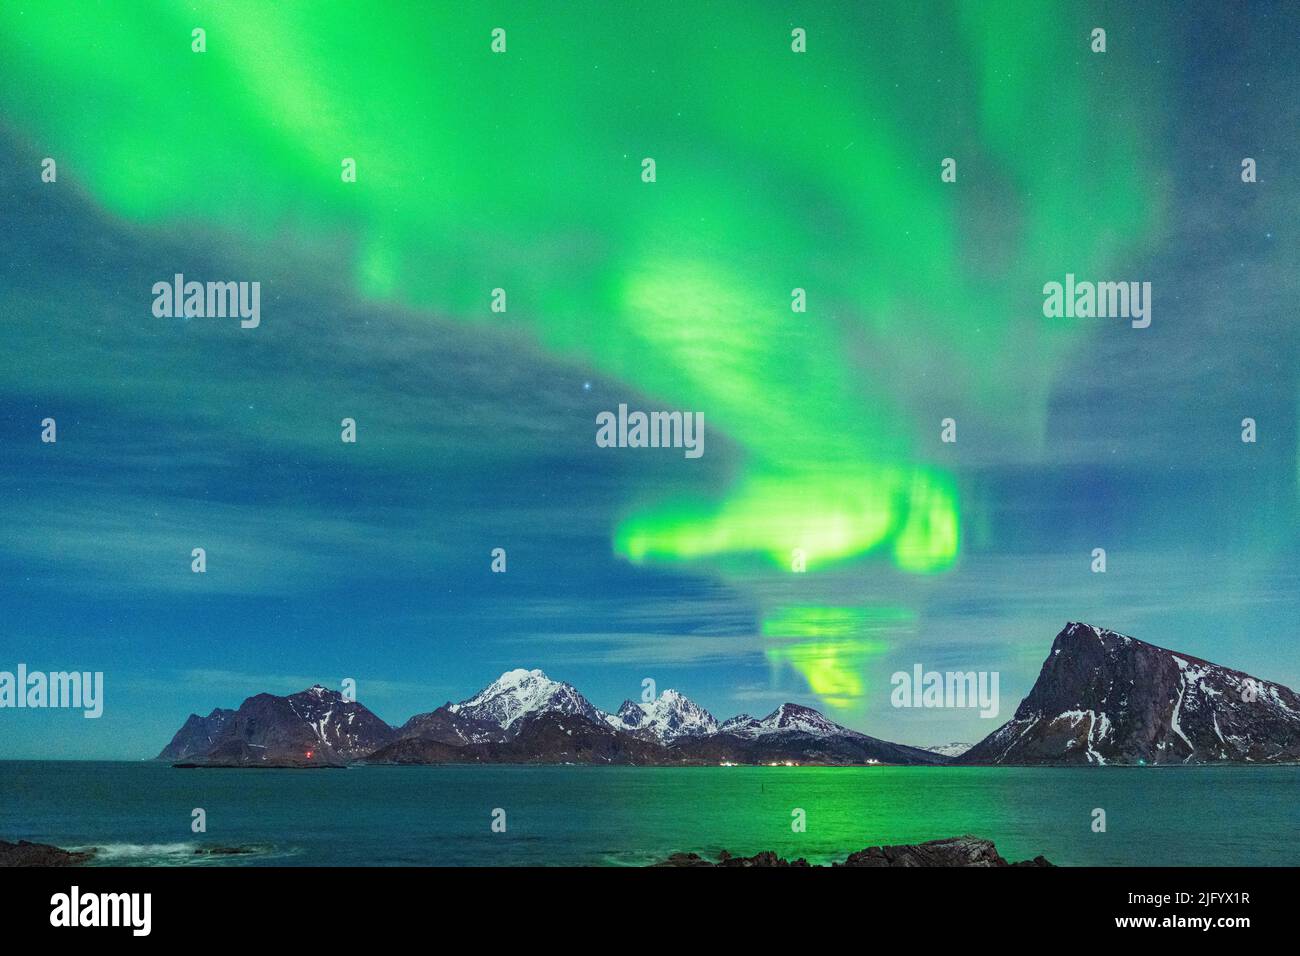 Luci verdi di Aurora Borealis (aurora boreale) che si riflettono nel mare, Myrland, Leknes, Vestvagoy, Isole Lofoten, Norvegia, Scandinavia Foto Stock